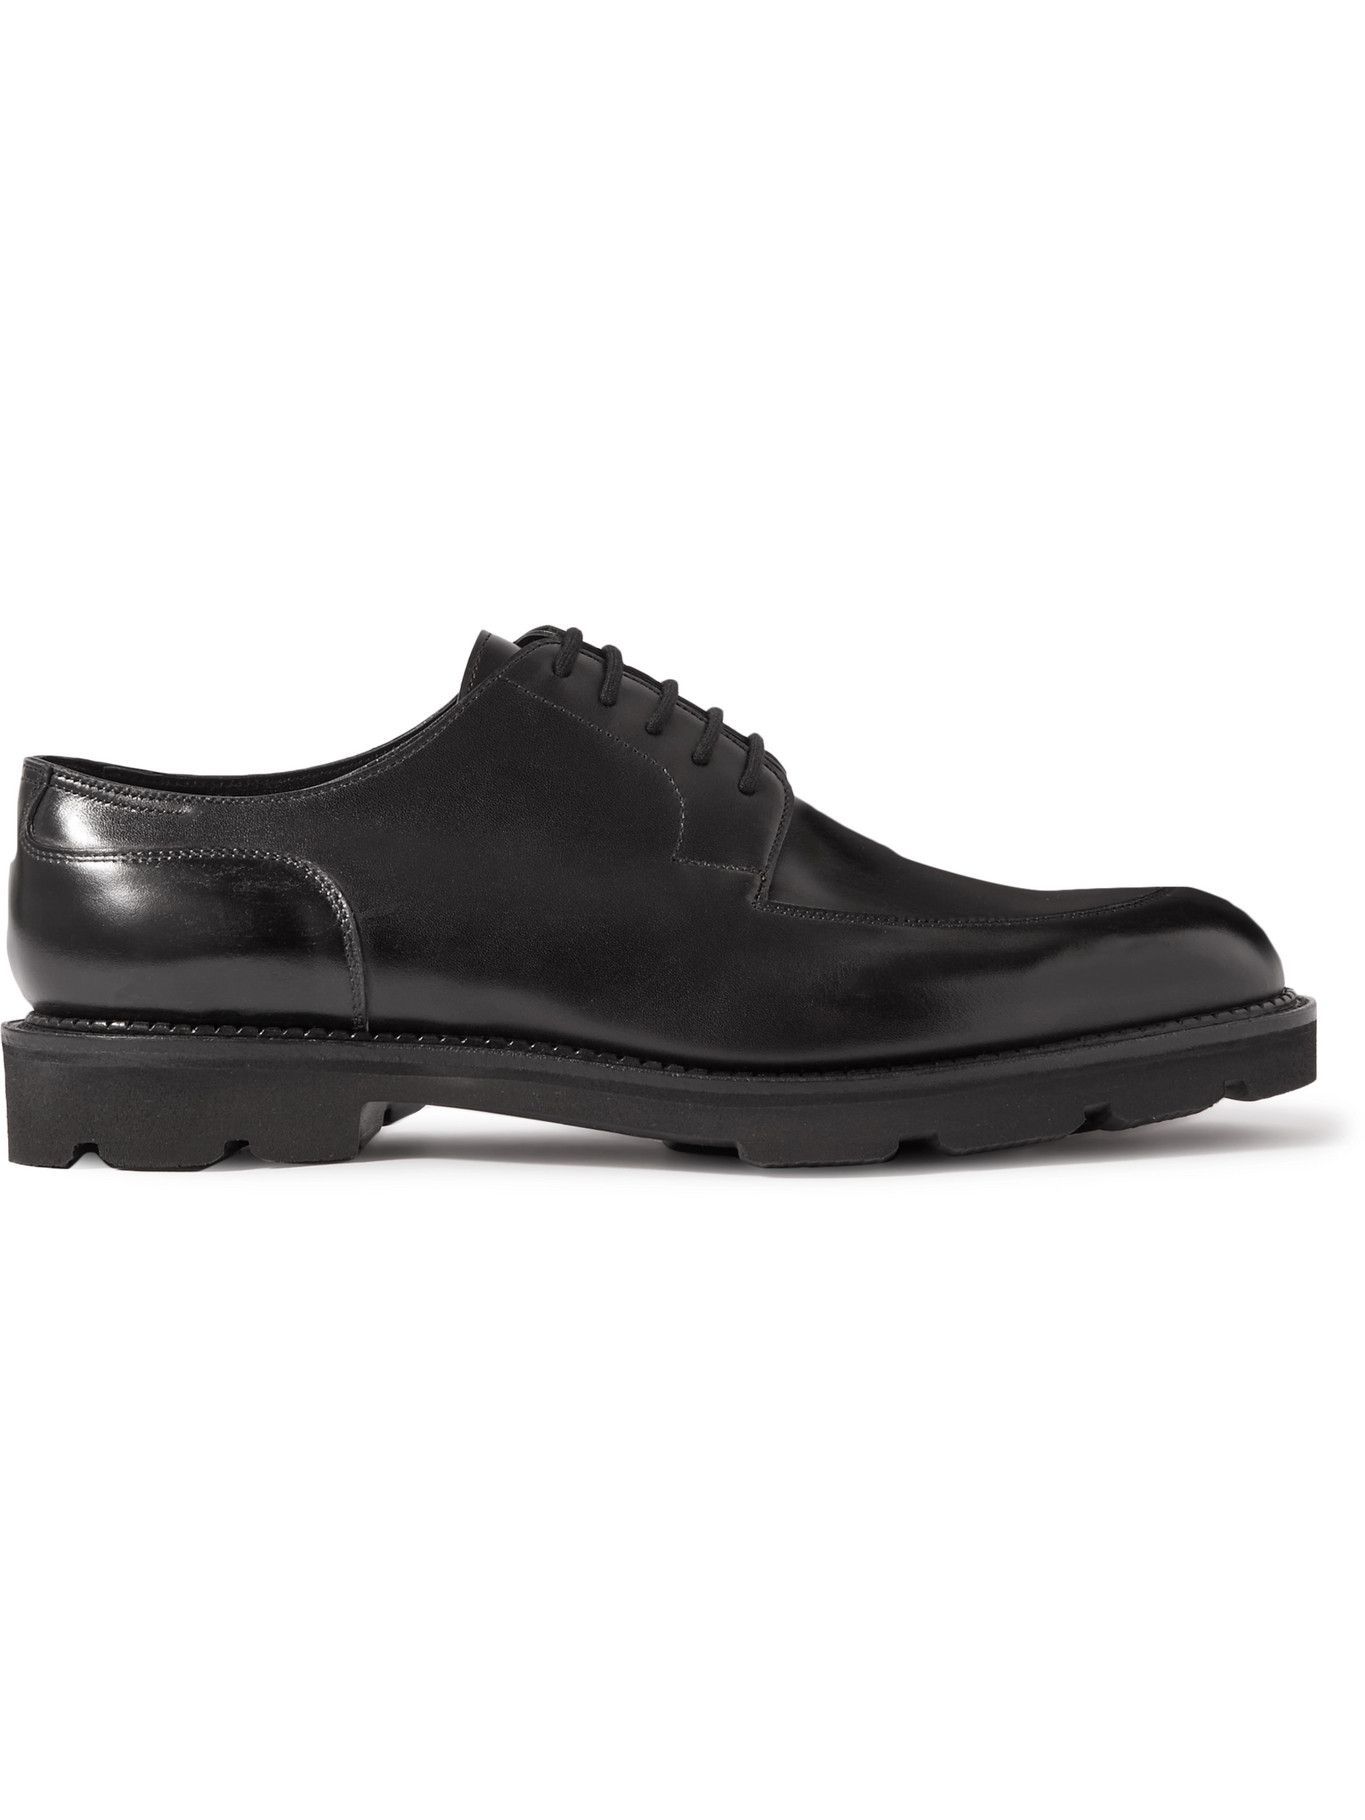 John Lobb - Hardington Polished-Leather Derby Shoes - Black John Lobb